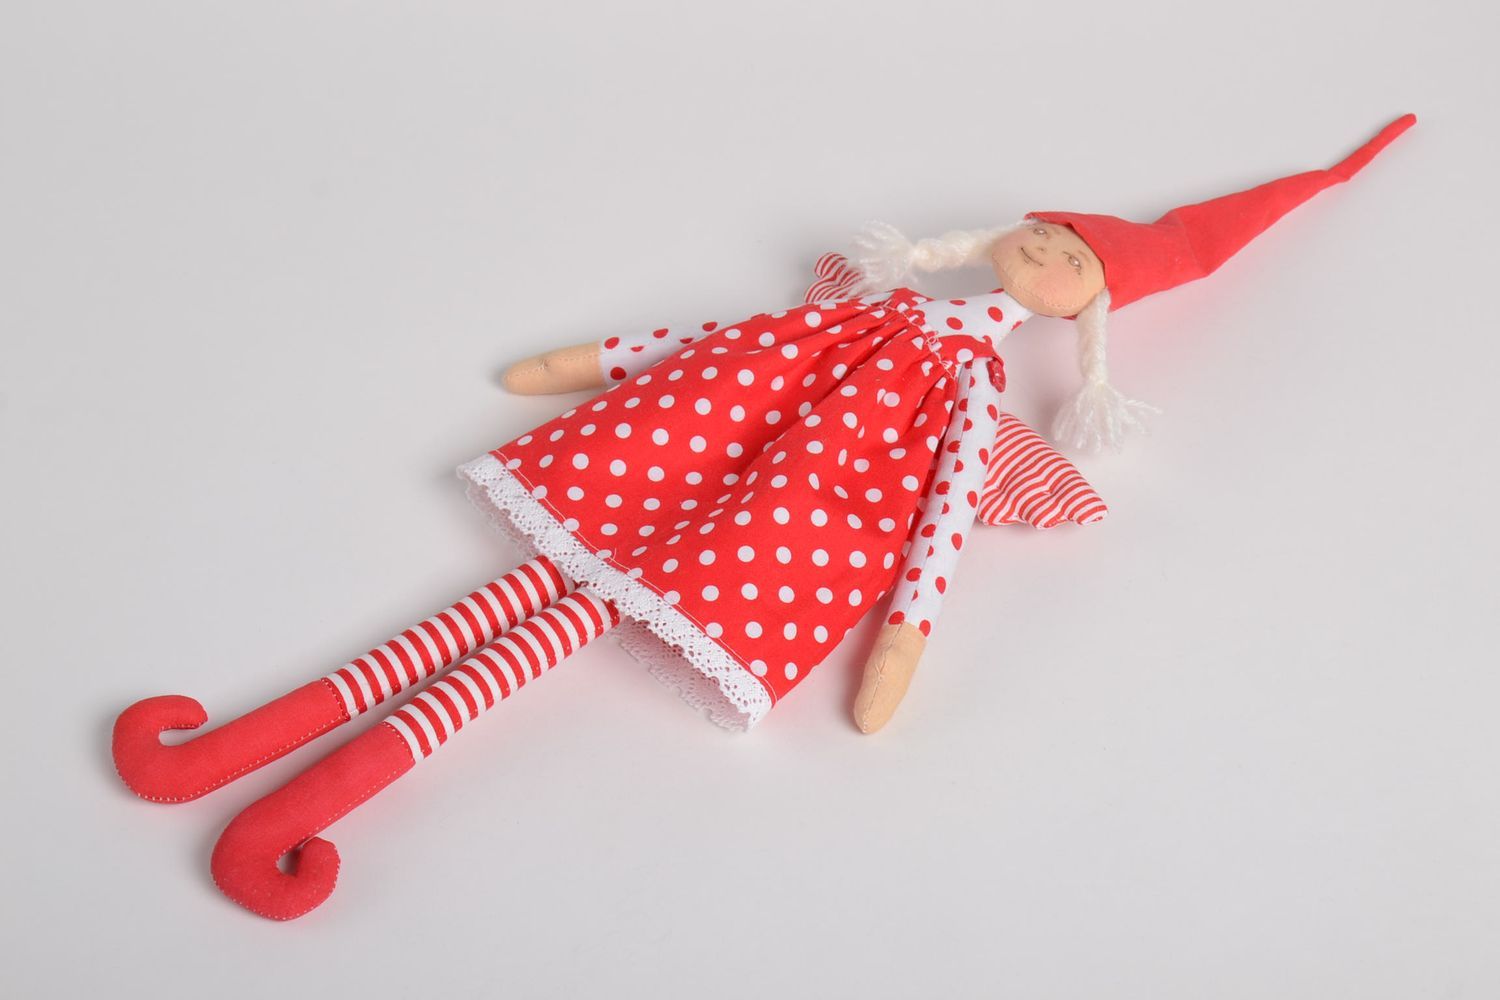 Мягкая игрушка ангел ручной работы игрушка для детей интерьерная игрушка фото 2